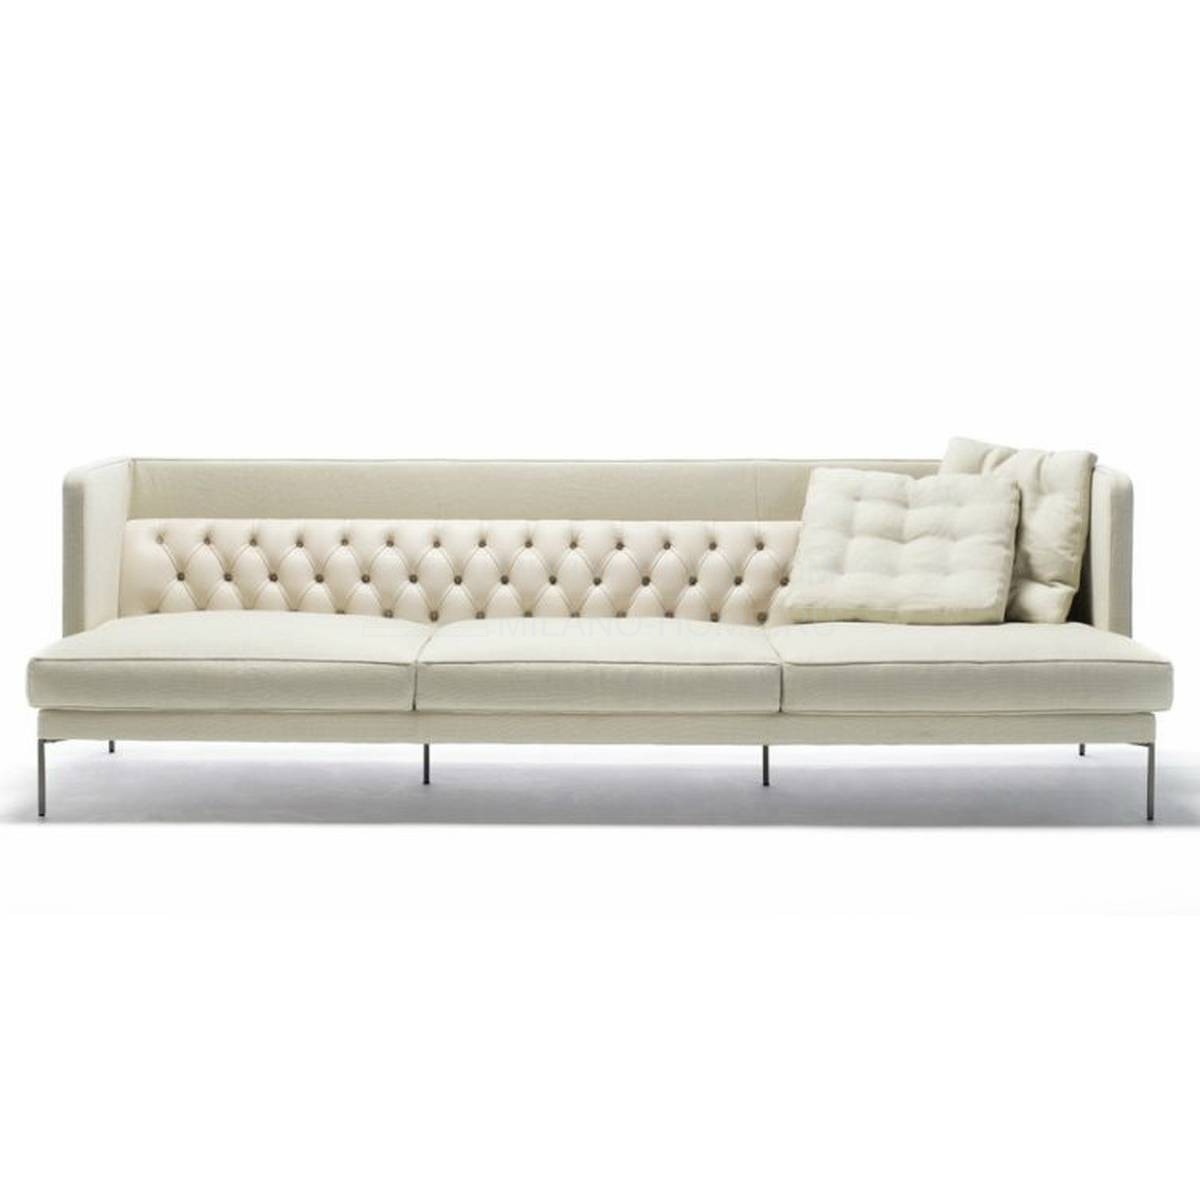 Прямой диван Lipp sofa из Италии фабрики LIVING DIVANI